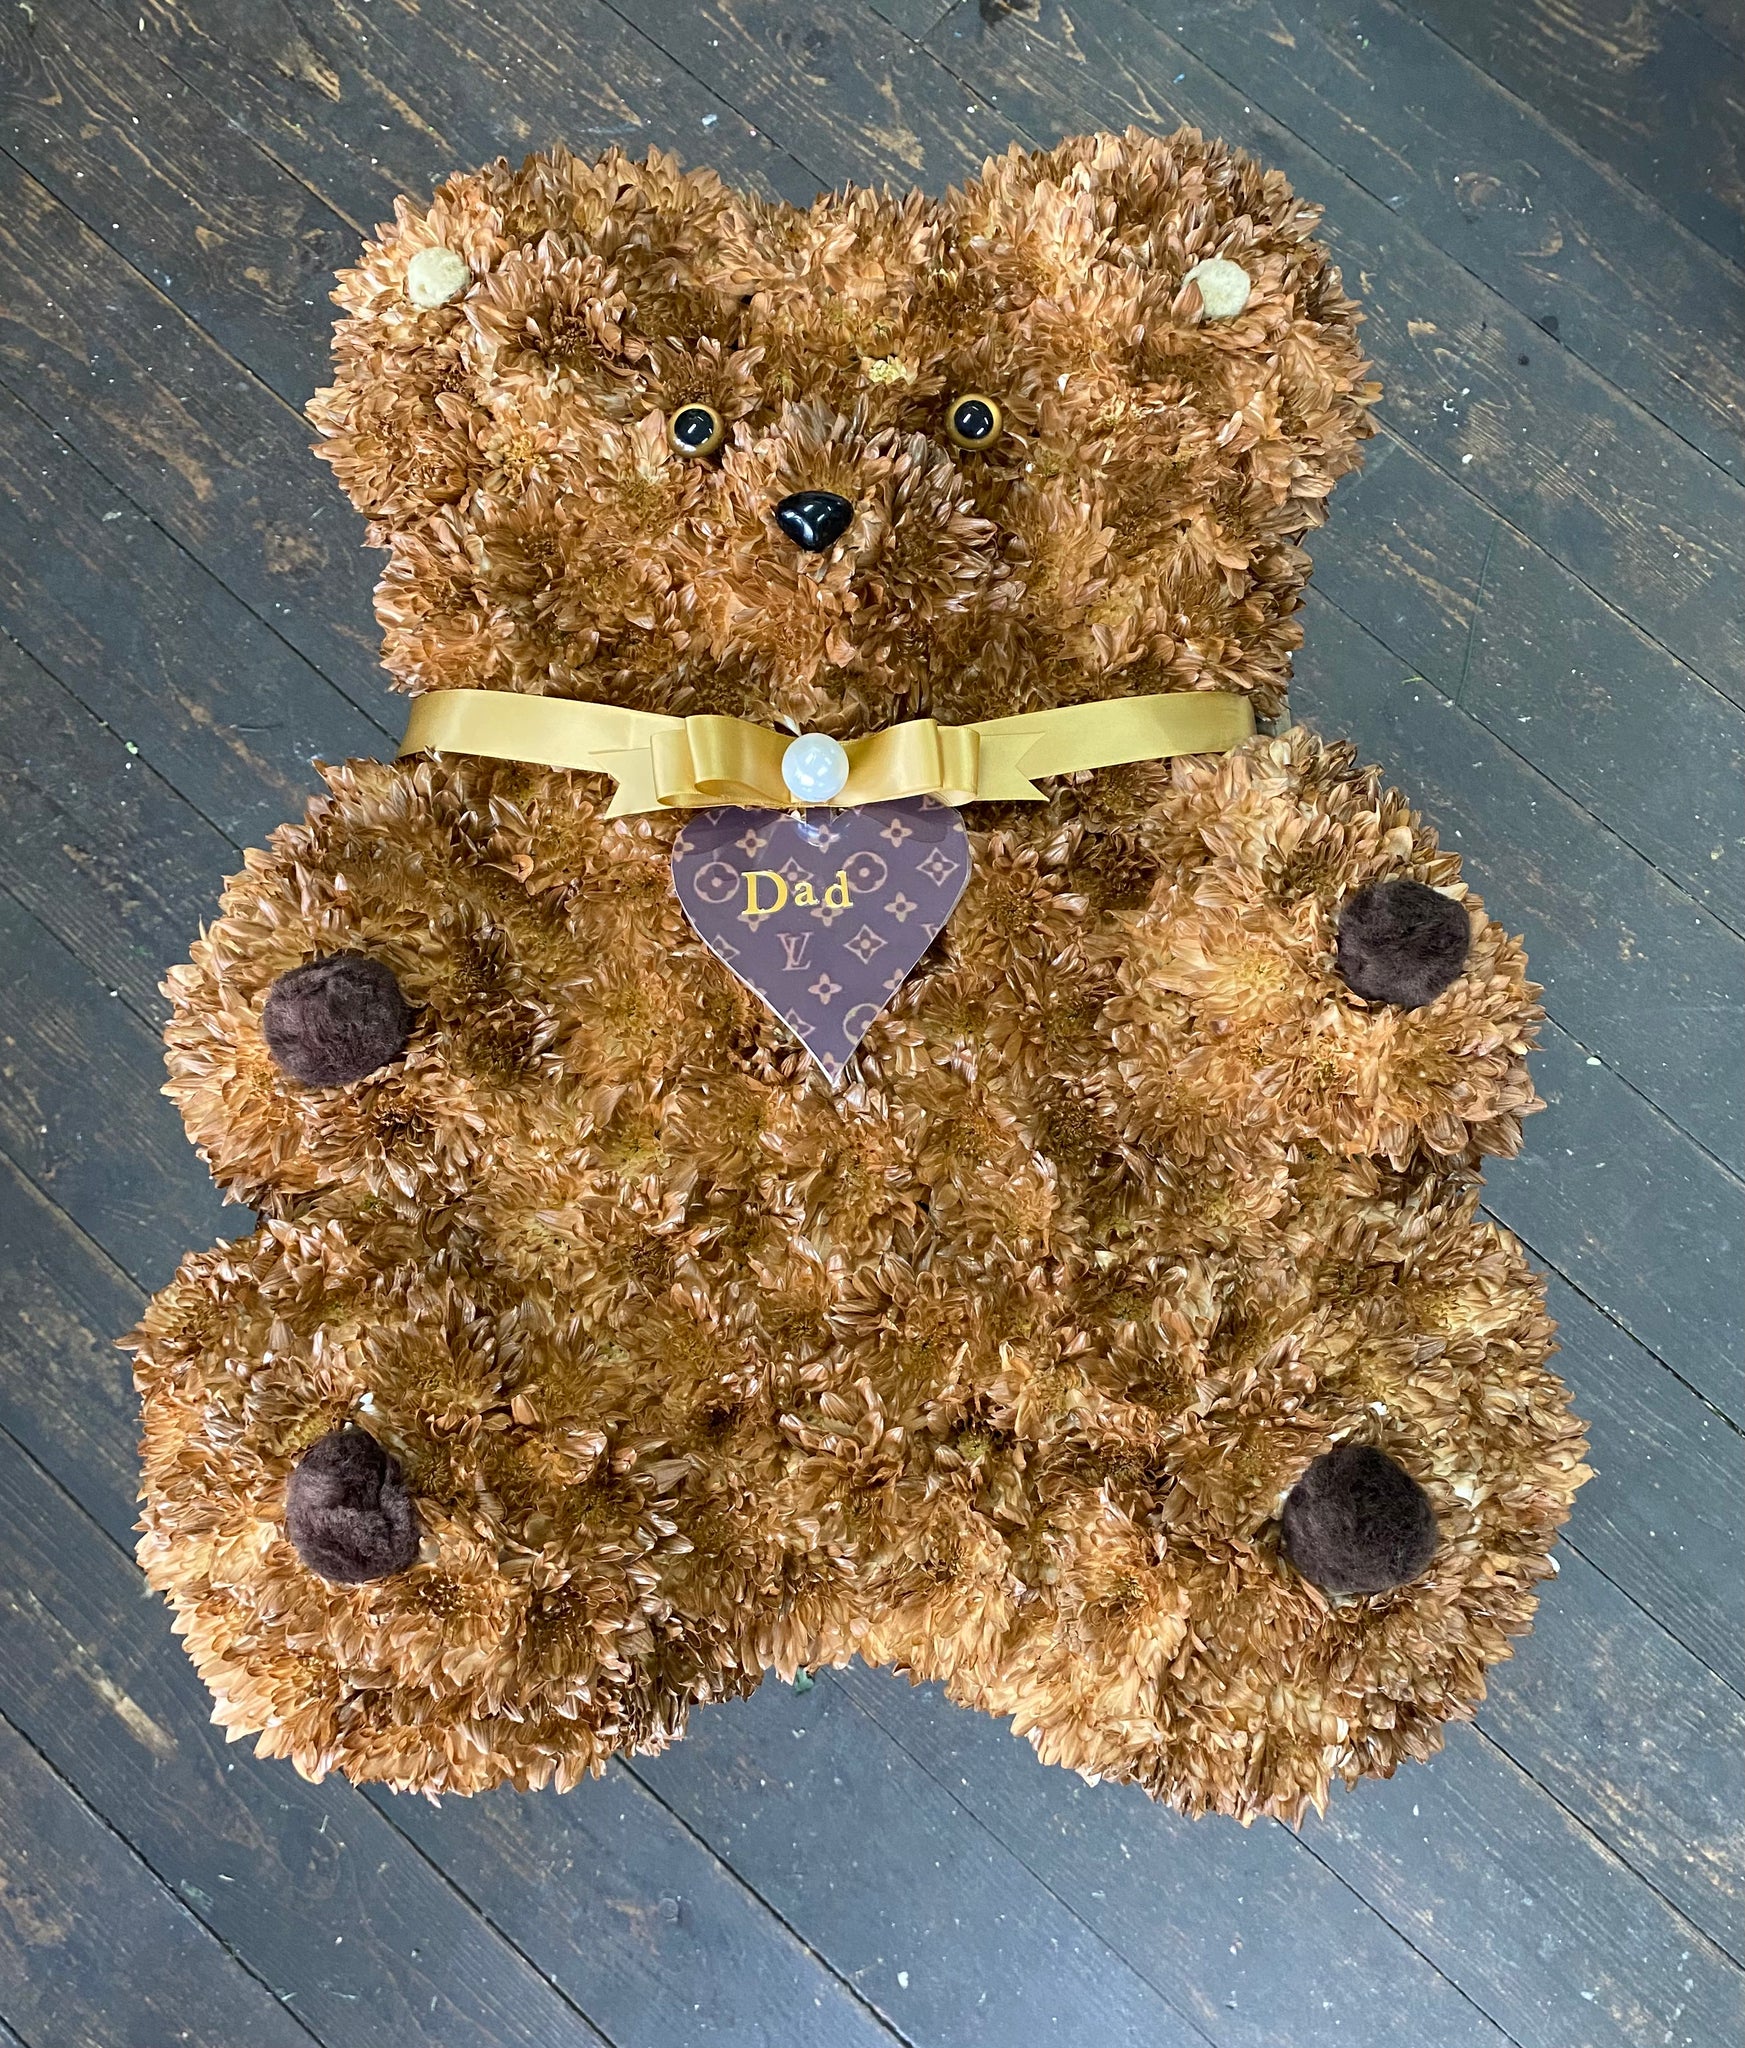 59 . Teddy bear.